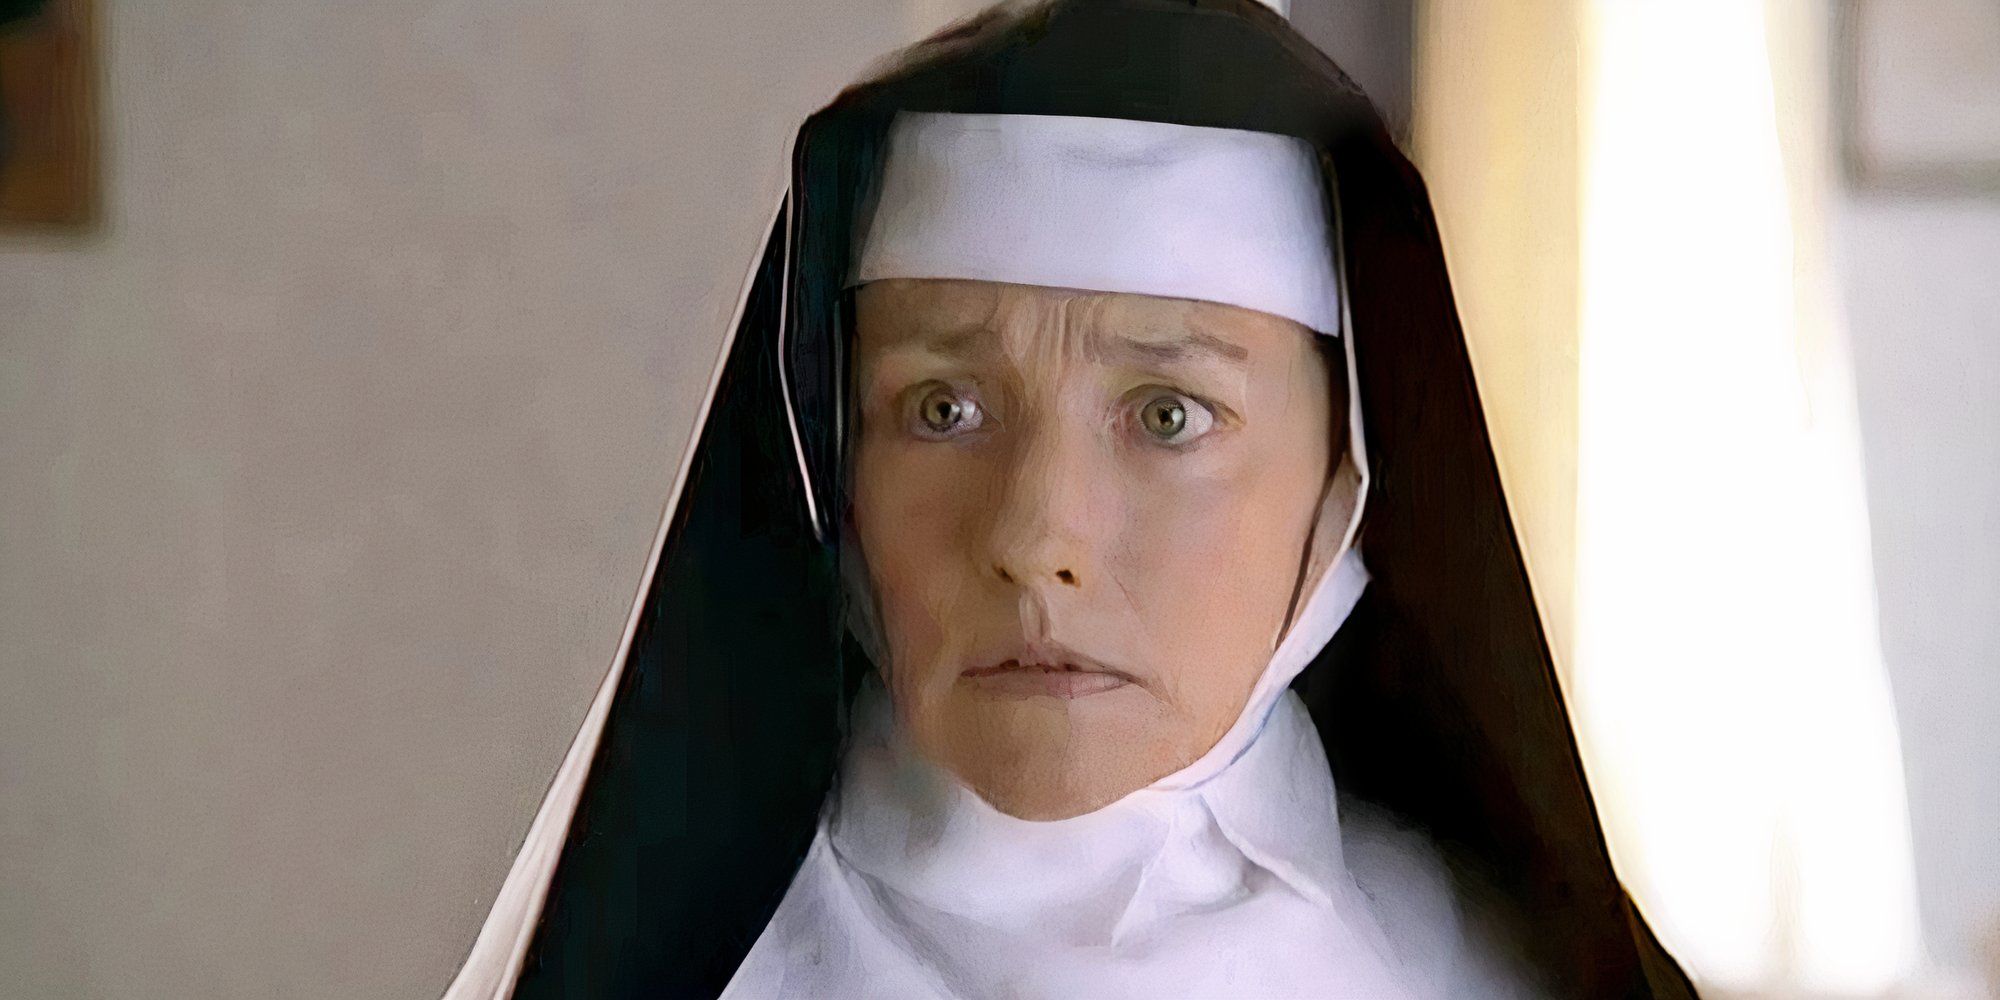 Olivia Hussey as Mother Teresa in Mother Teresa looking worried.